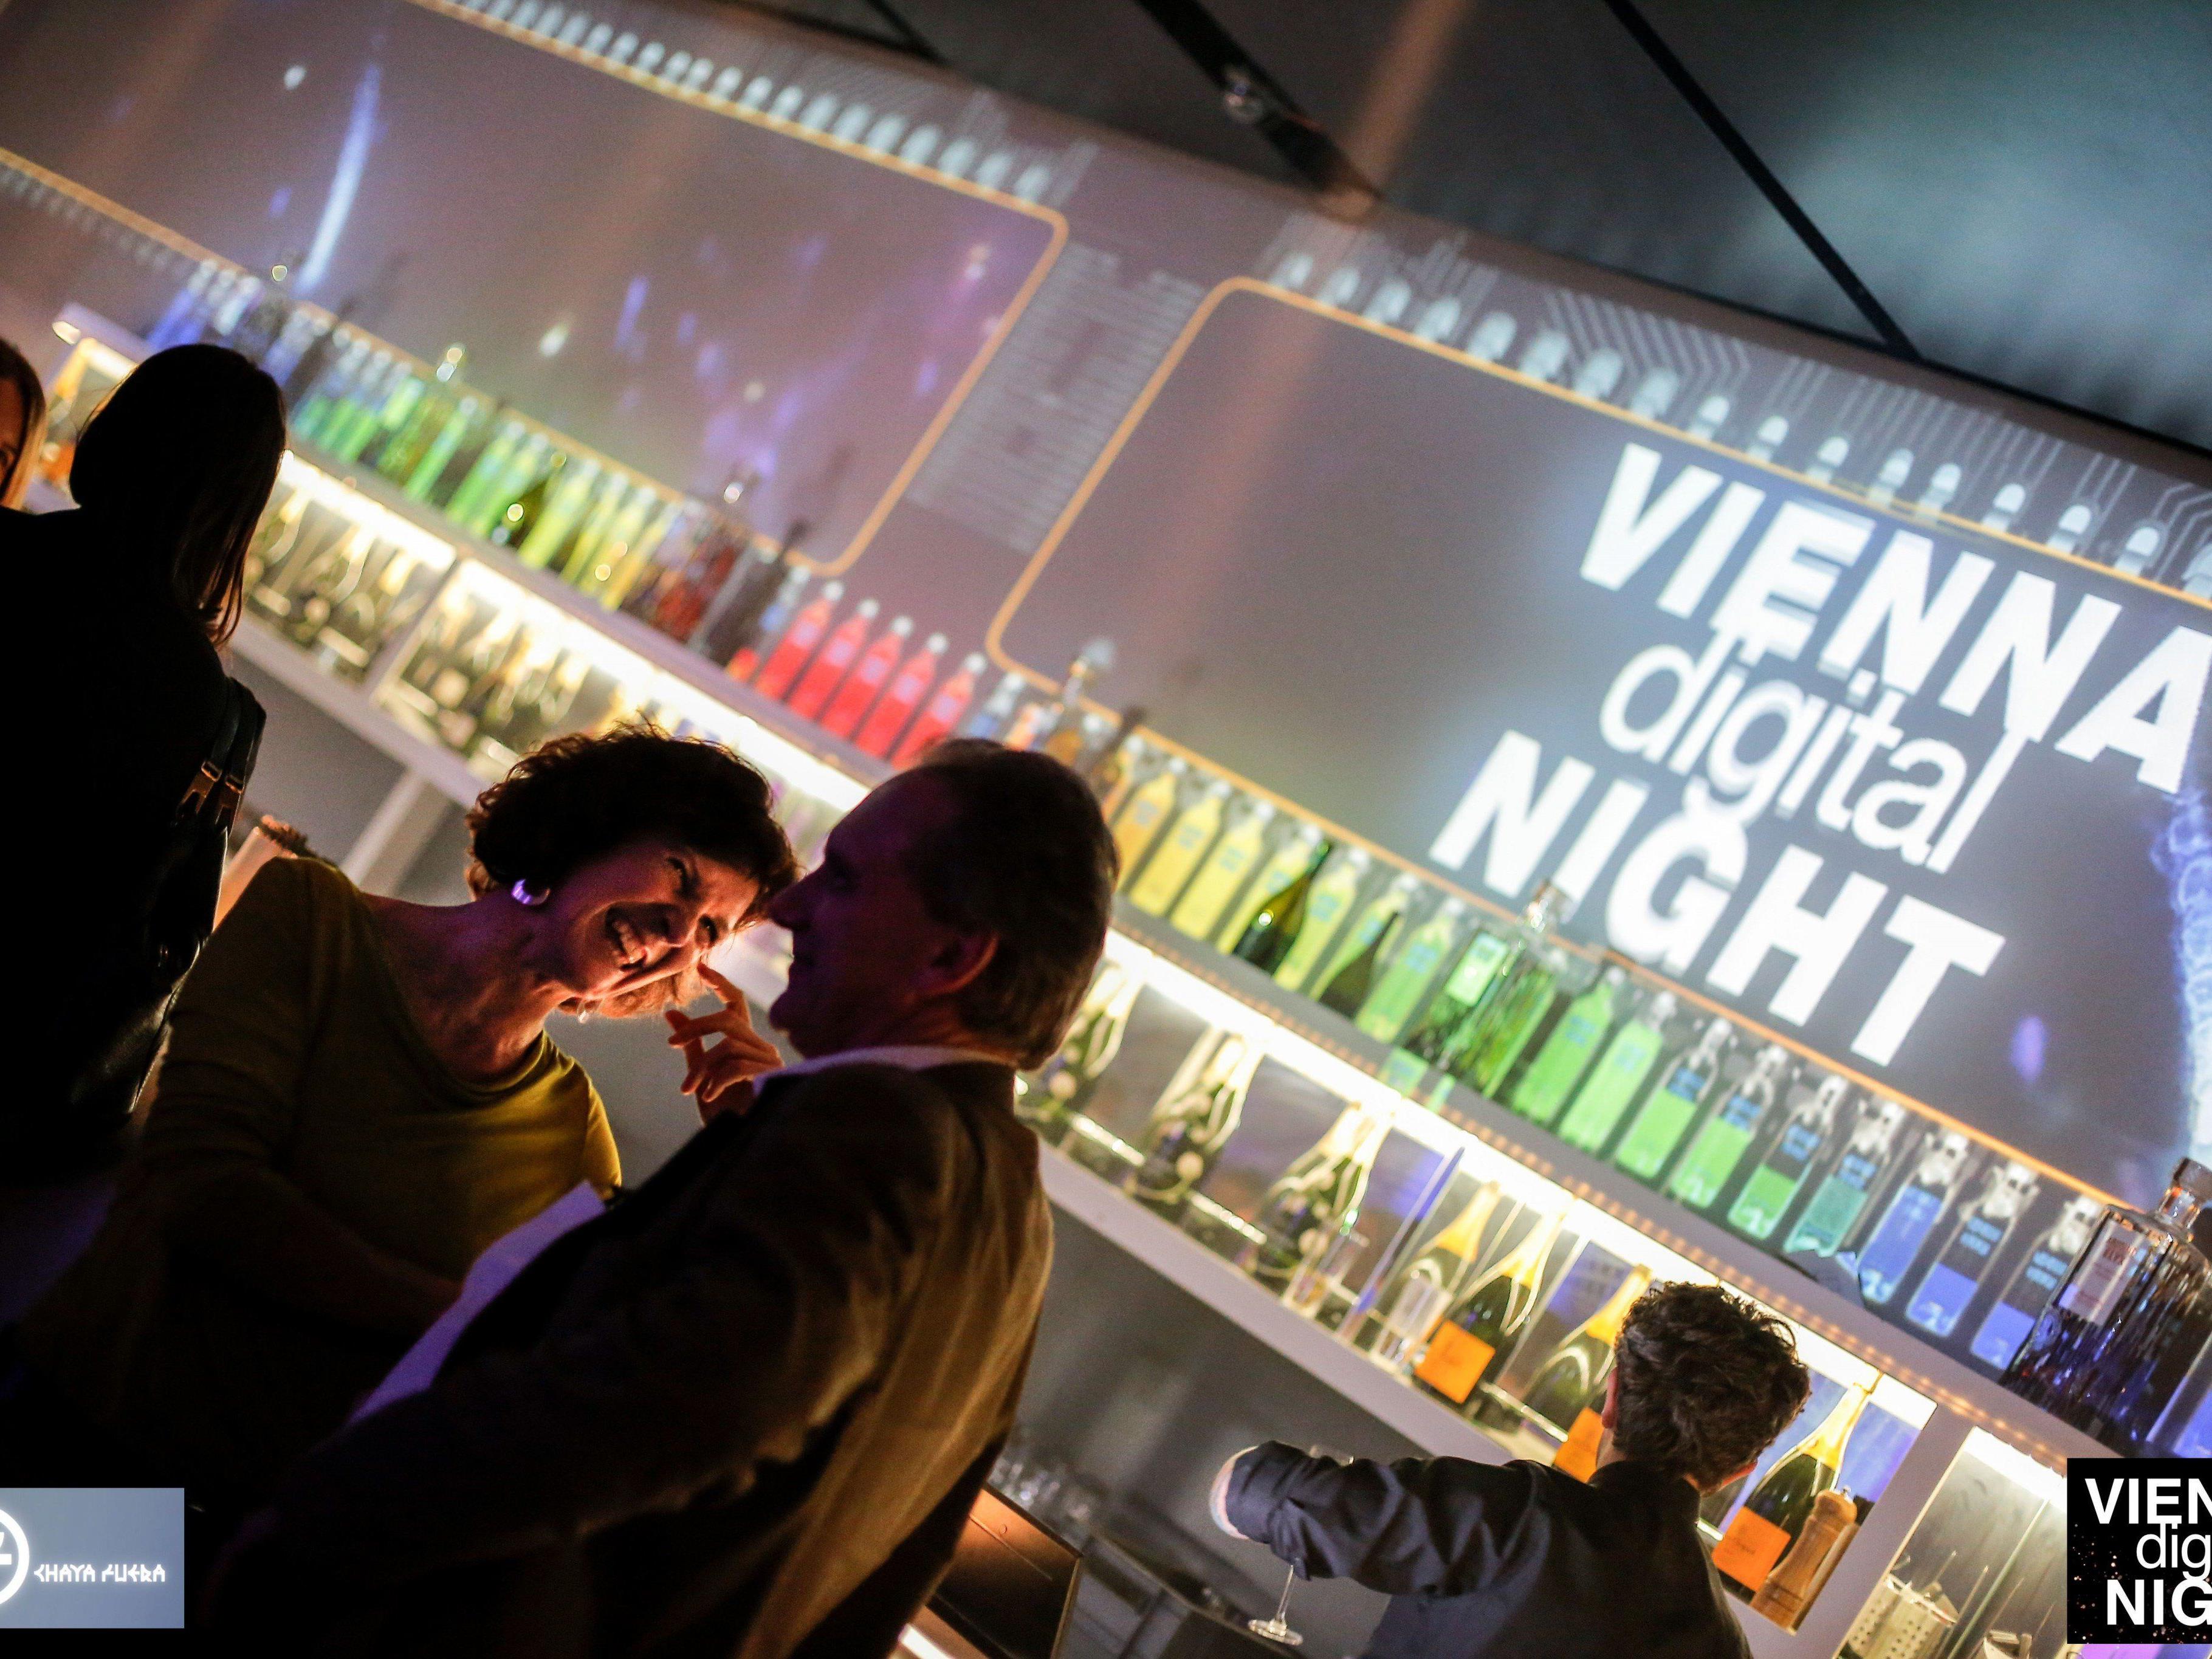 Fulminanter Herbstauftakt für die Vienna Digital Night